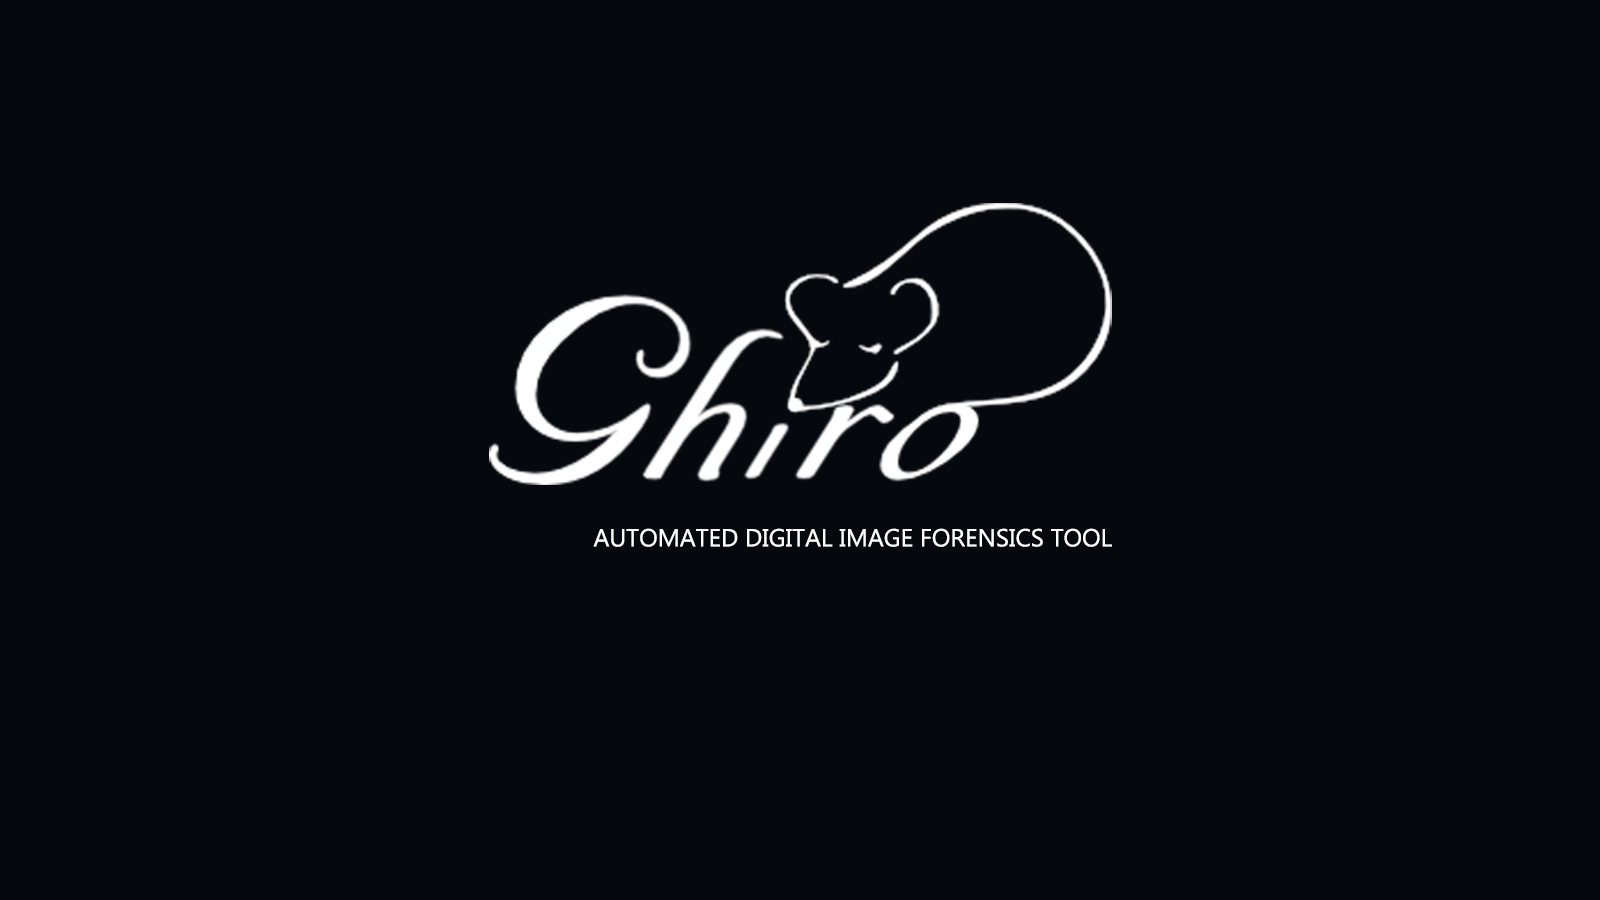 Ghiro Forensics Tool